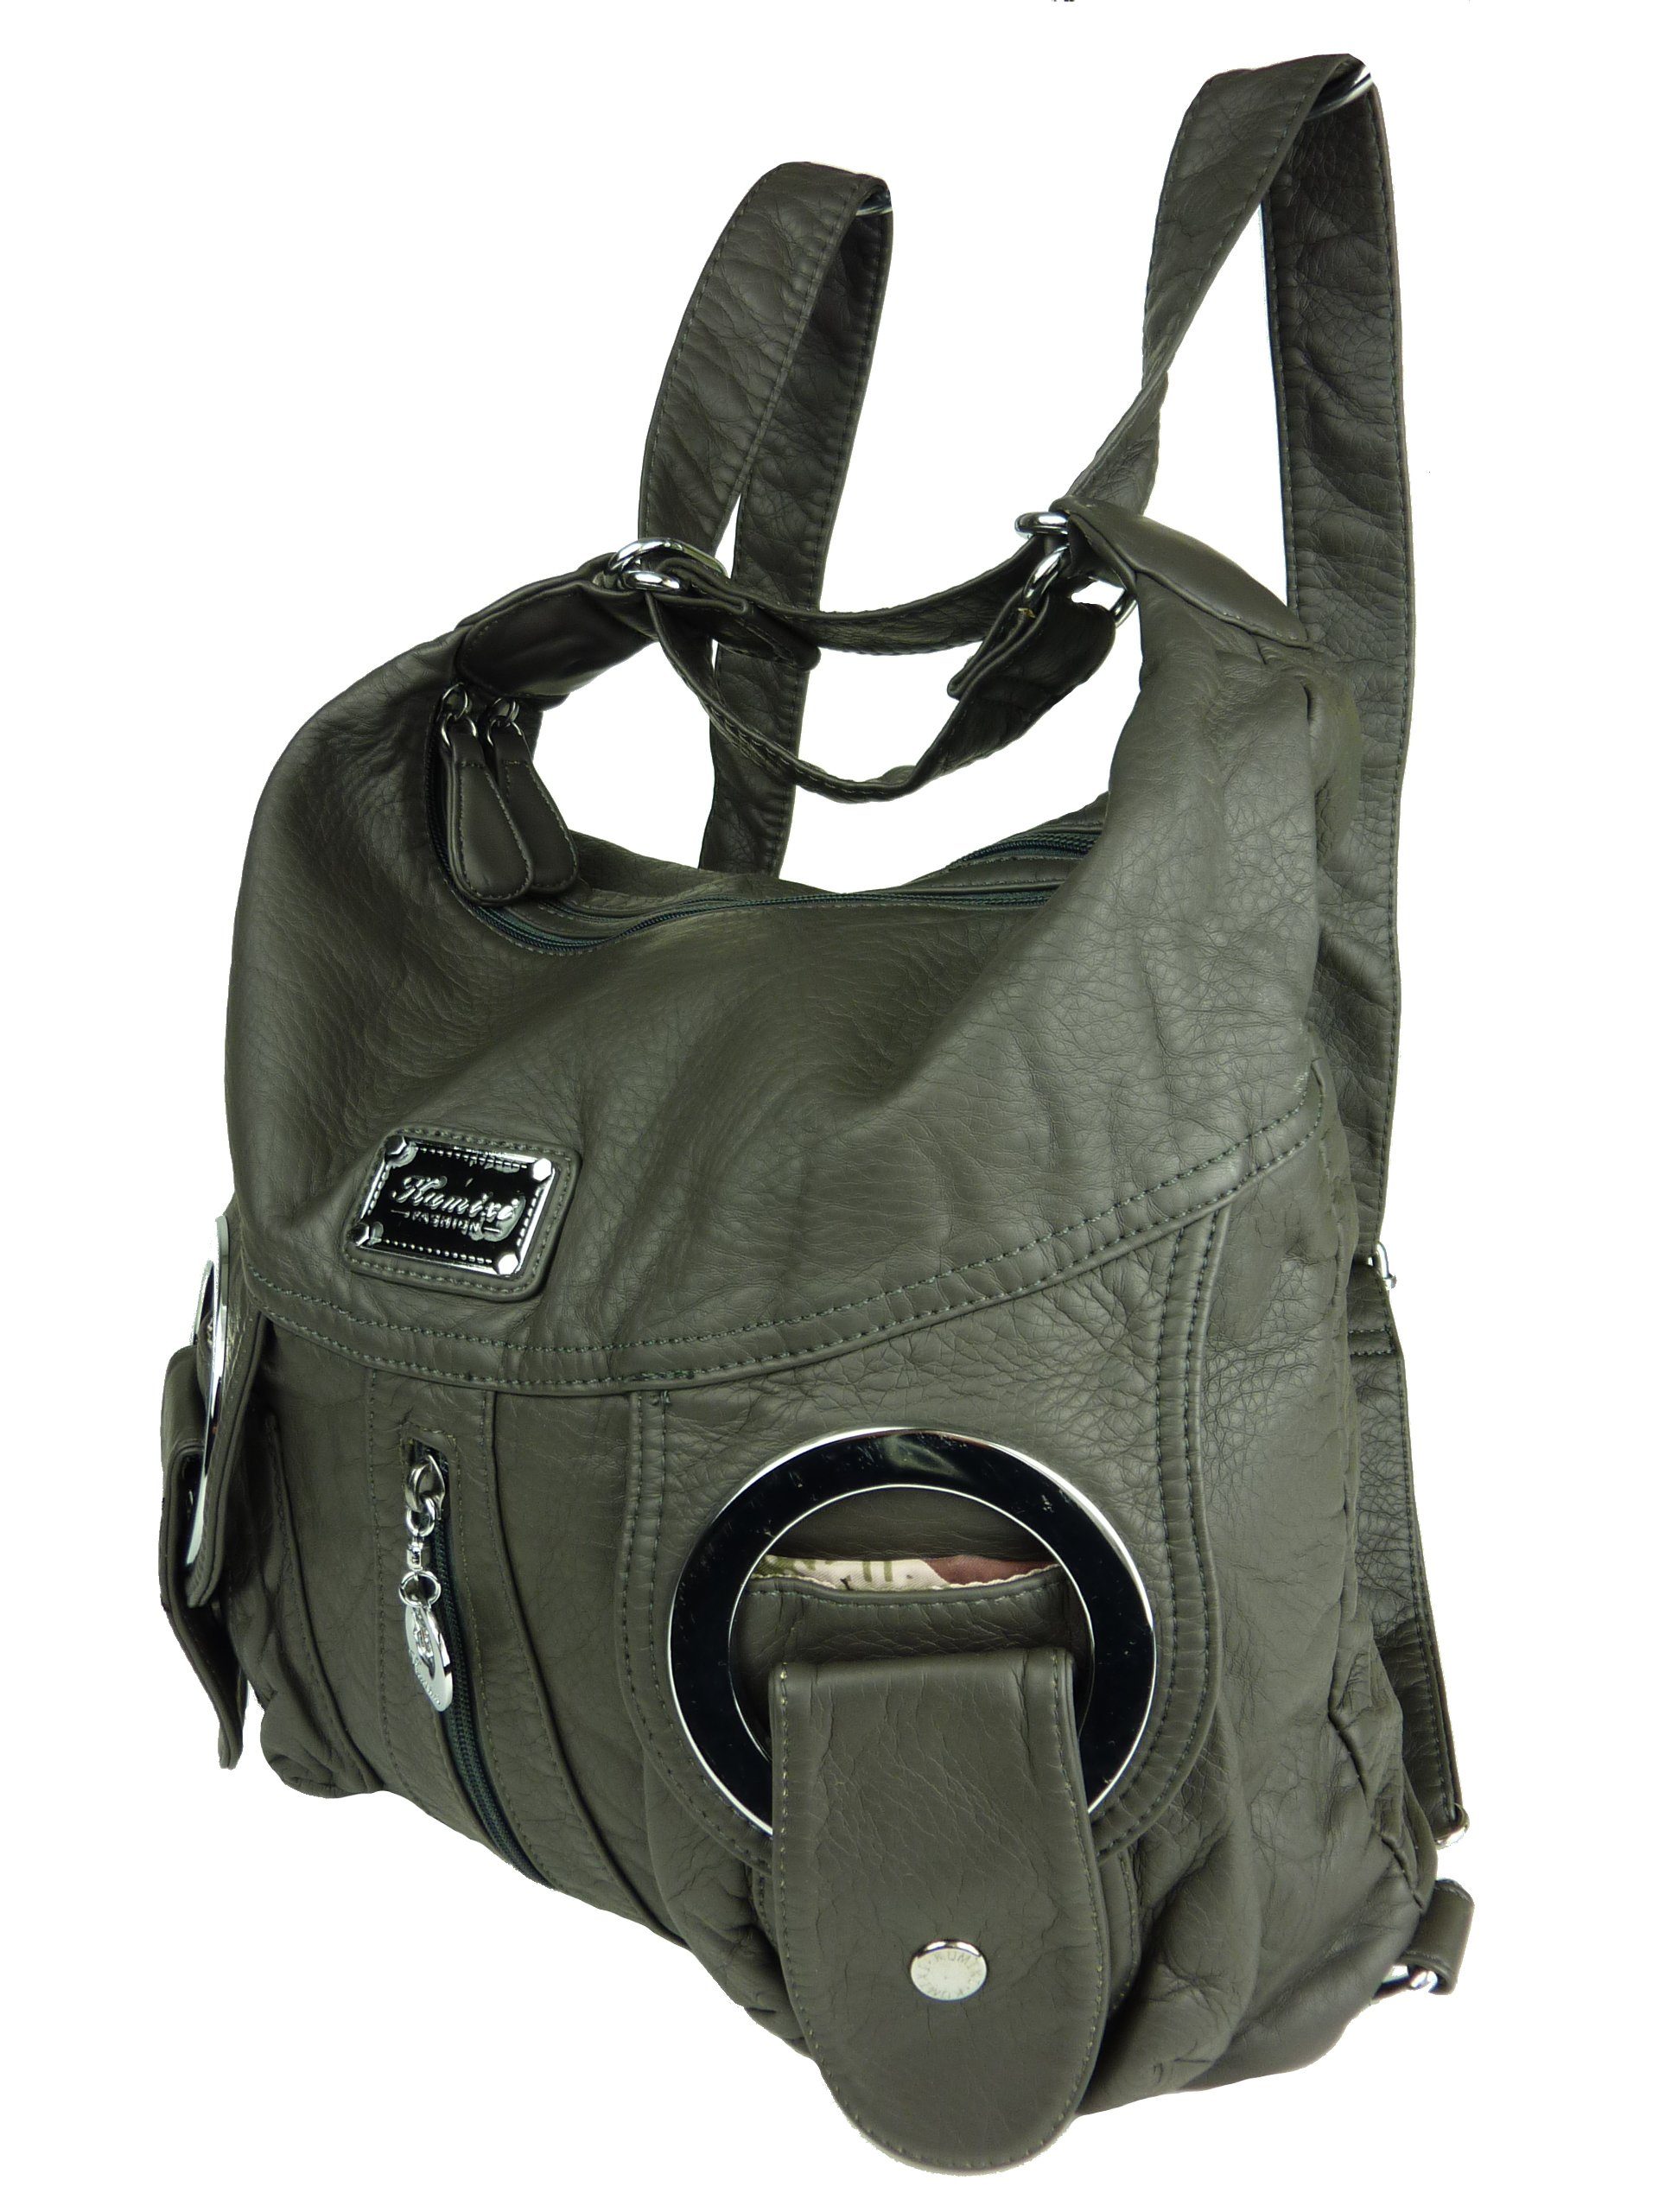 Taschen4life Schultertasche Rucksacktasche W6802 Multifunktionstasche, Tasche oder Rucksack, verstellbarer Schulterriemen, als Schultertasche oder Rucksack tragbar anthrazit | Schultertaschen